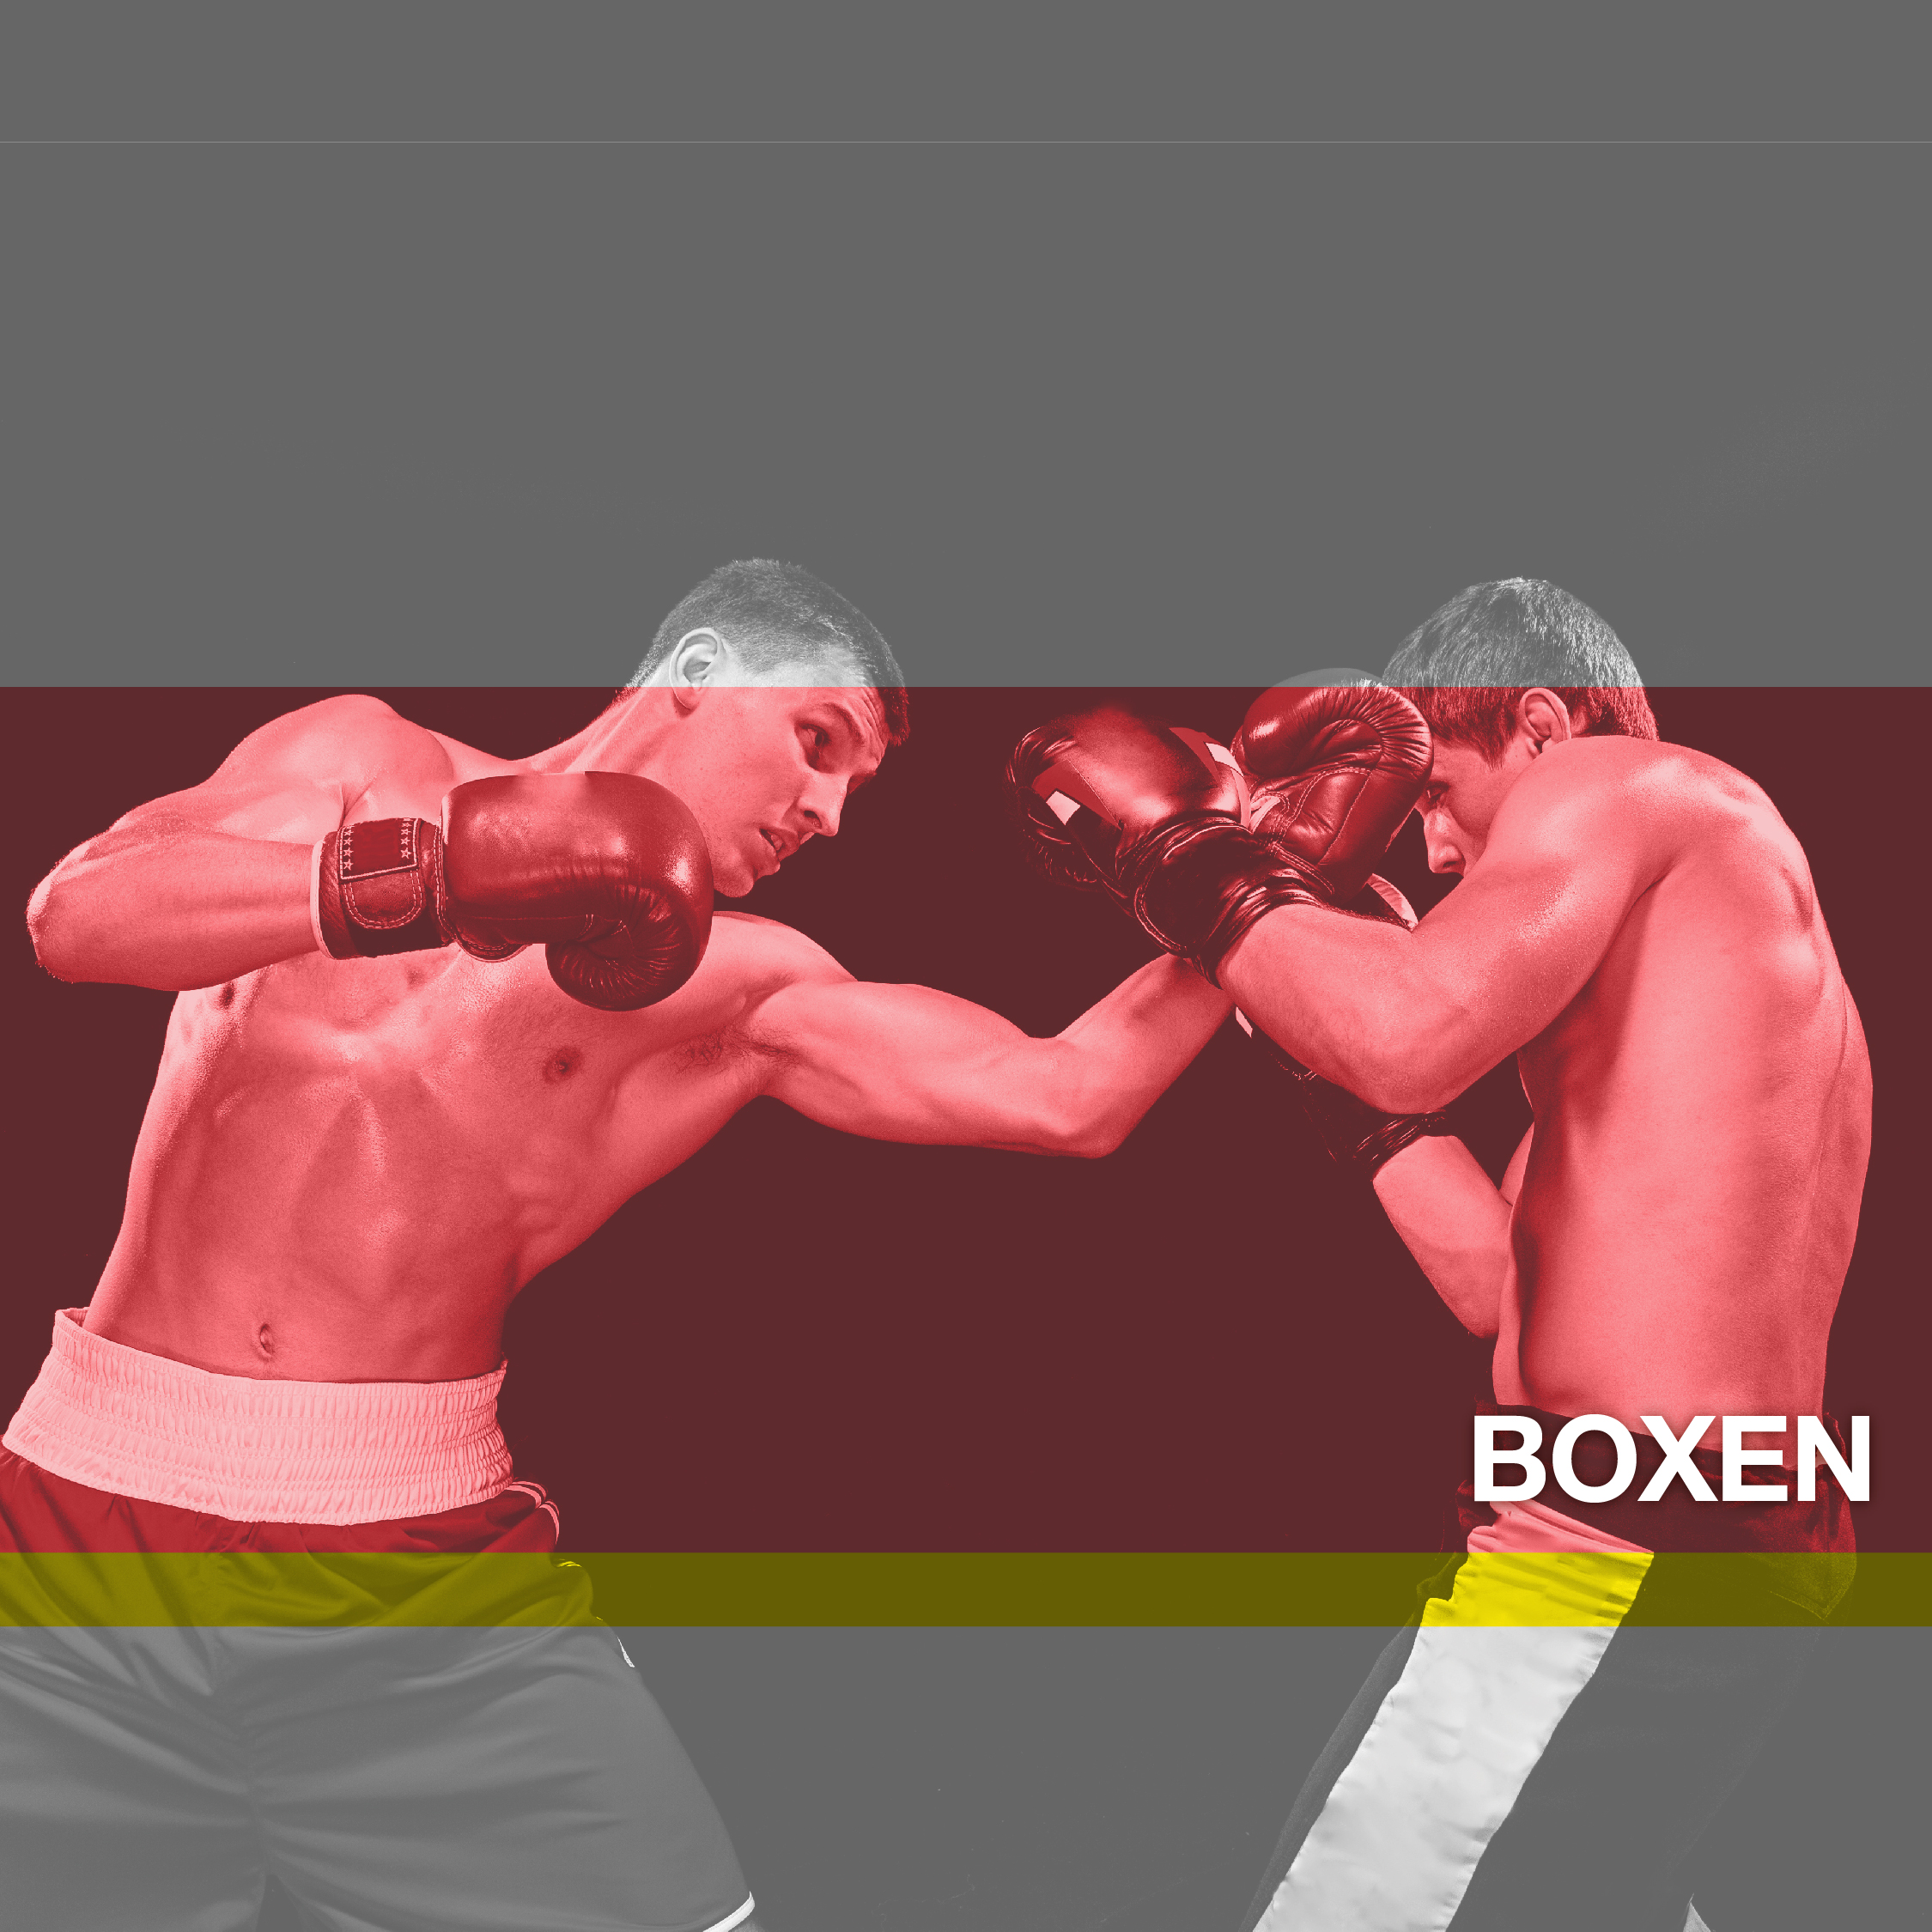 Zwei Boxer stehen sich in einem Kampf gegenüber, wobei einer dem anderen einen Schlag versetzt. Das Bild ist mit einem roten Filter überlagert und in der unteren rechten Ecke ist das Wort „BOXEN“ zu sehen.